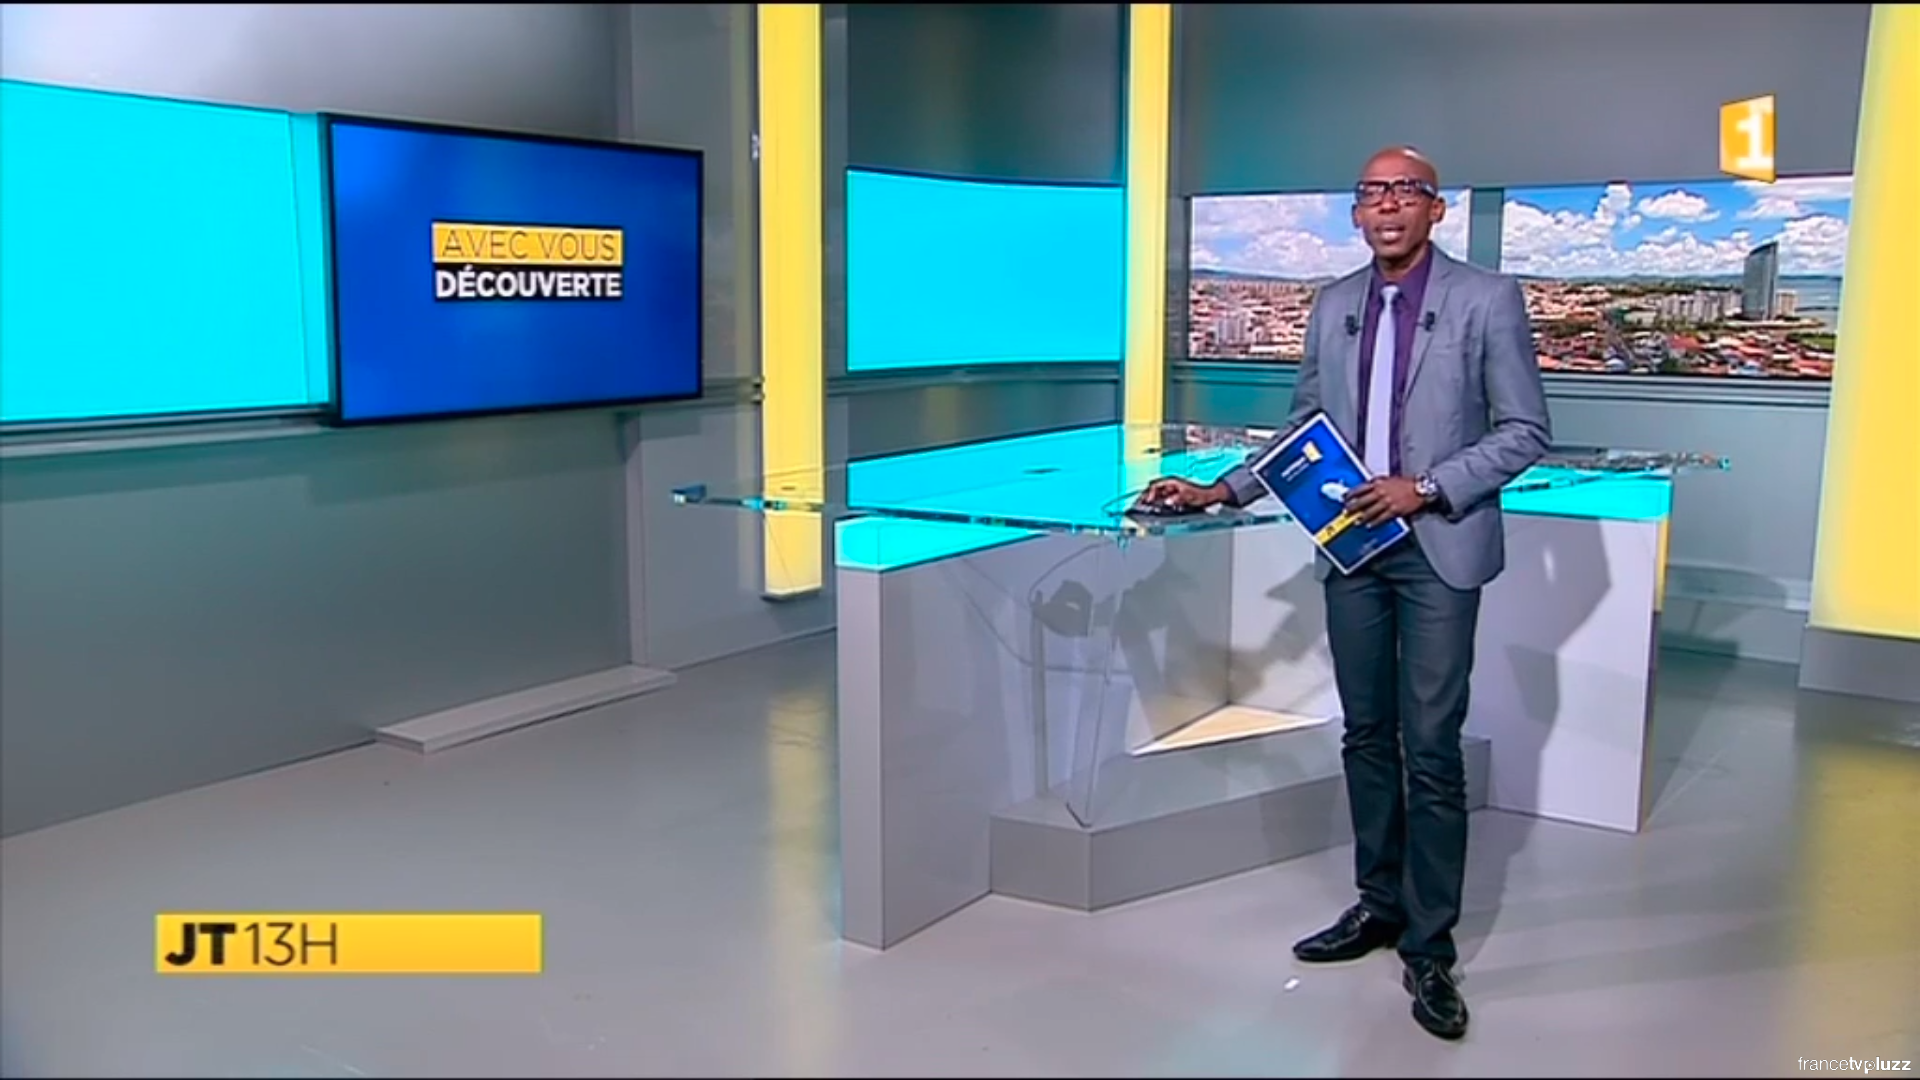 MARTINIQUE 1ère (2017) – France Télévision